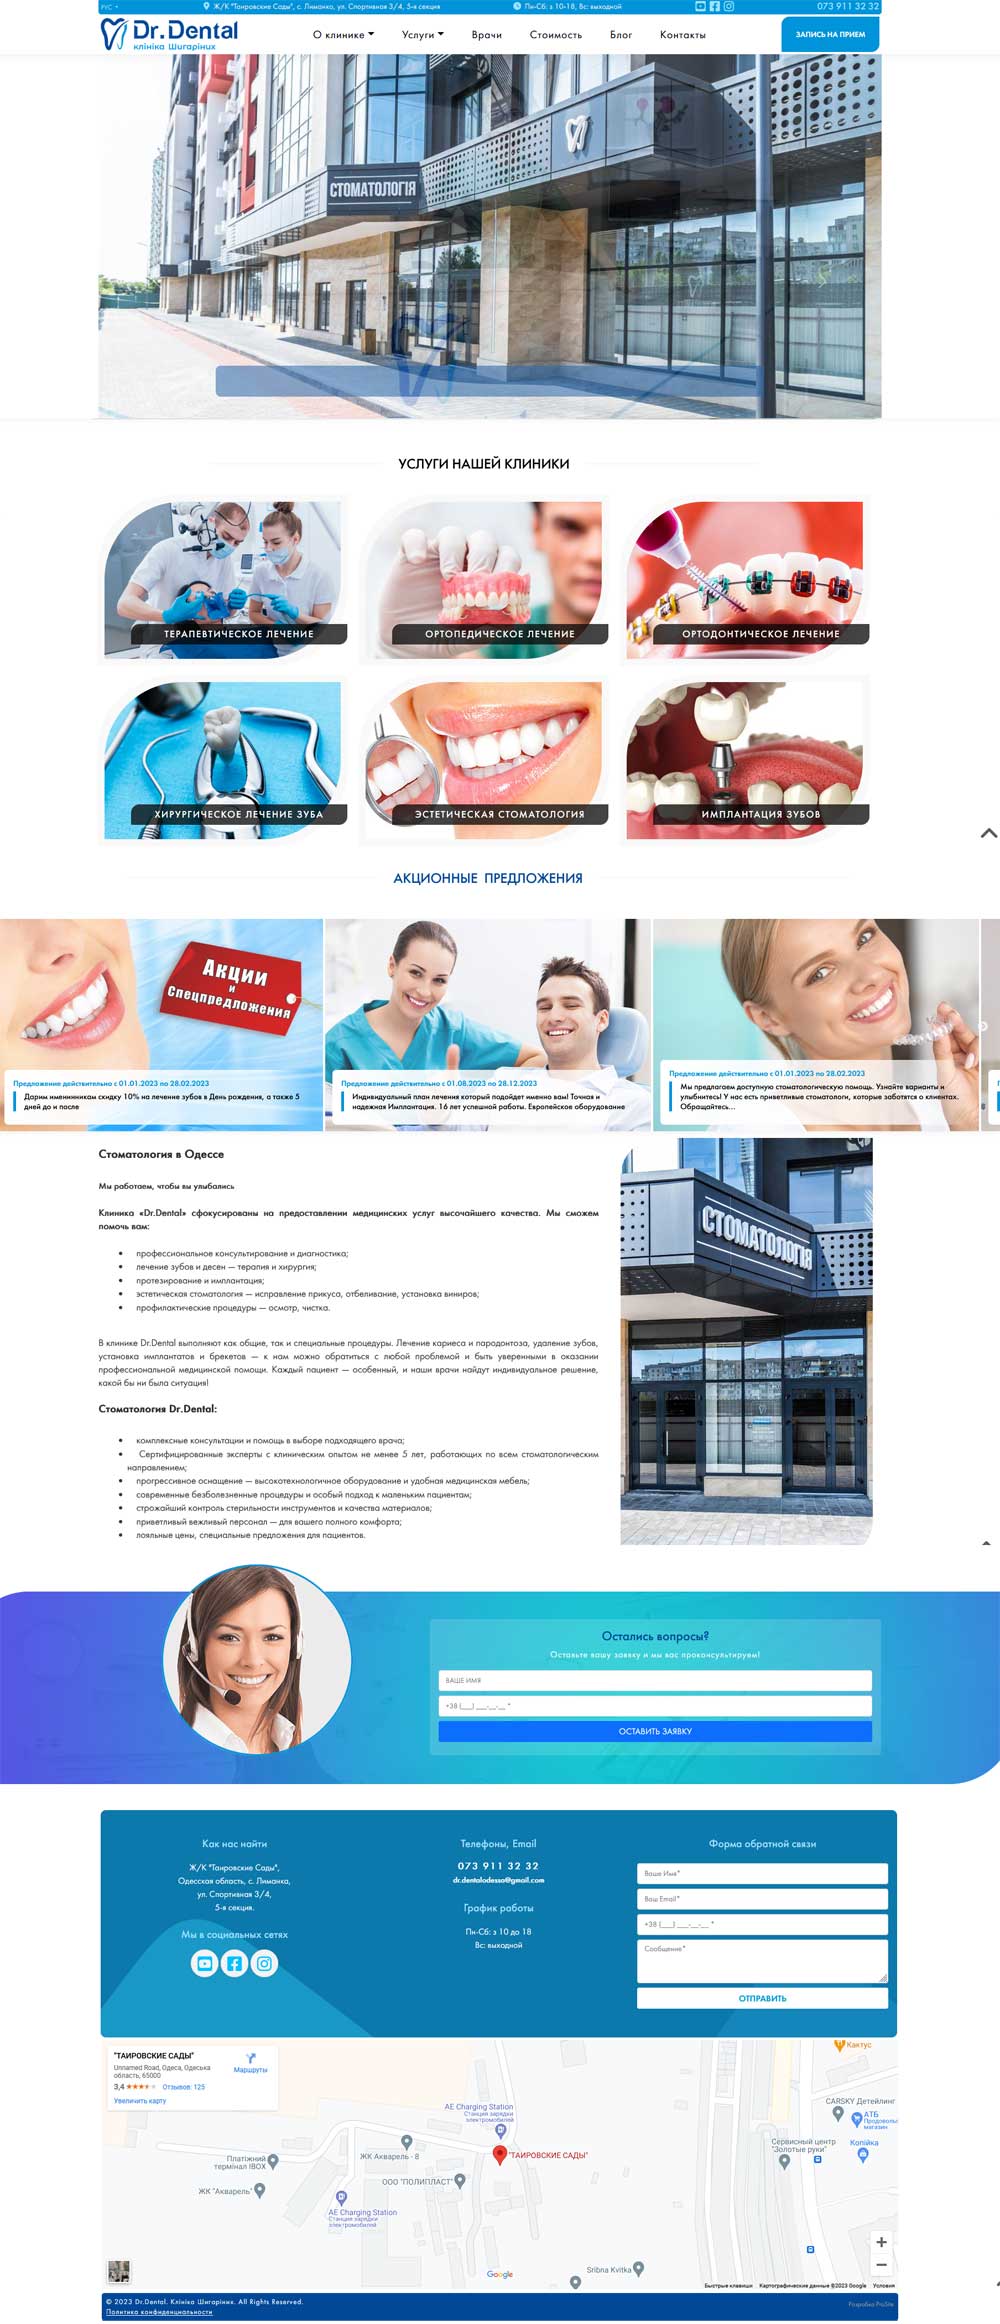 створення сайту. Сімейна стоматологія Dr.Dental. Клініка Шигаріних Одеса